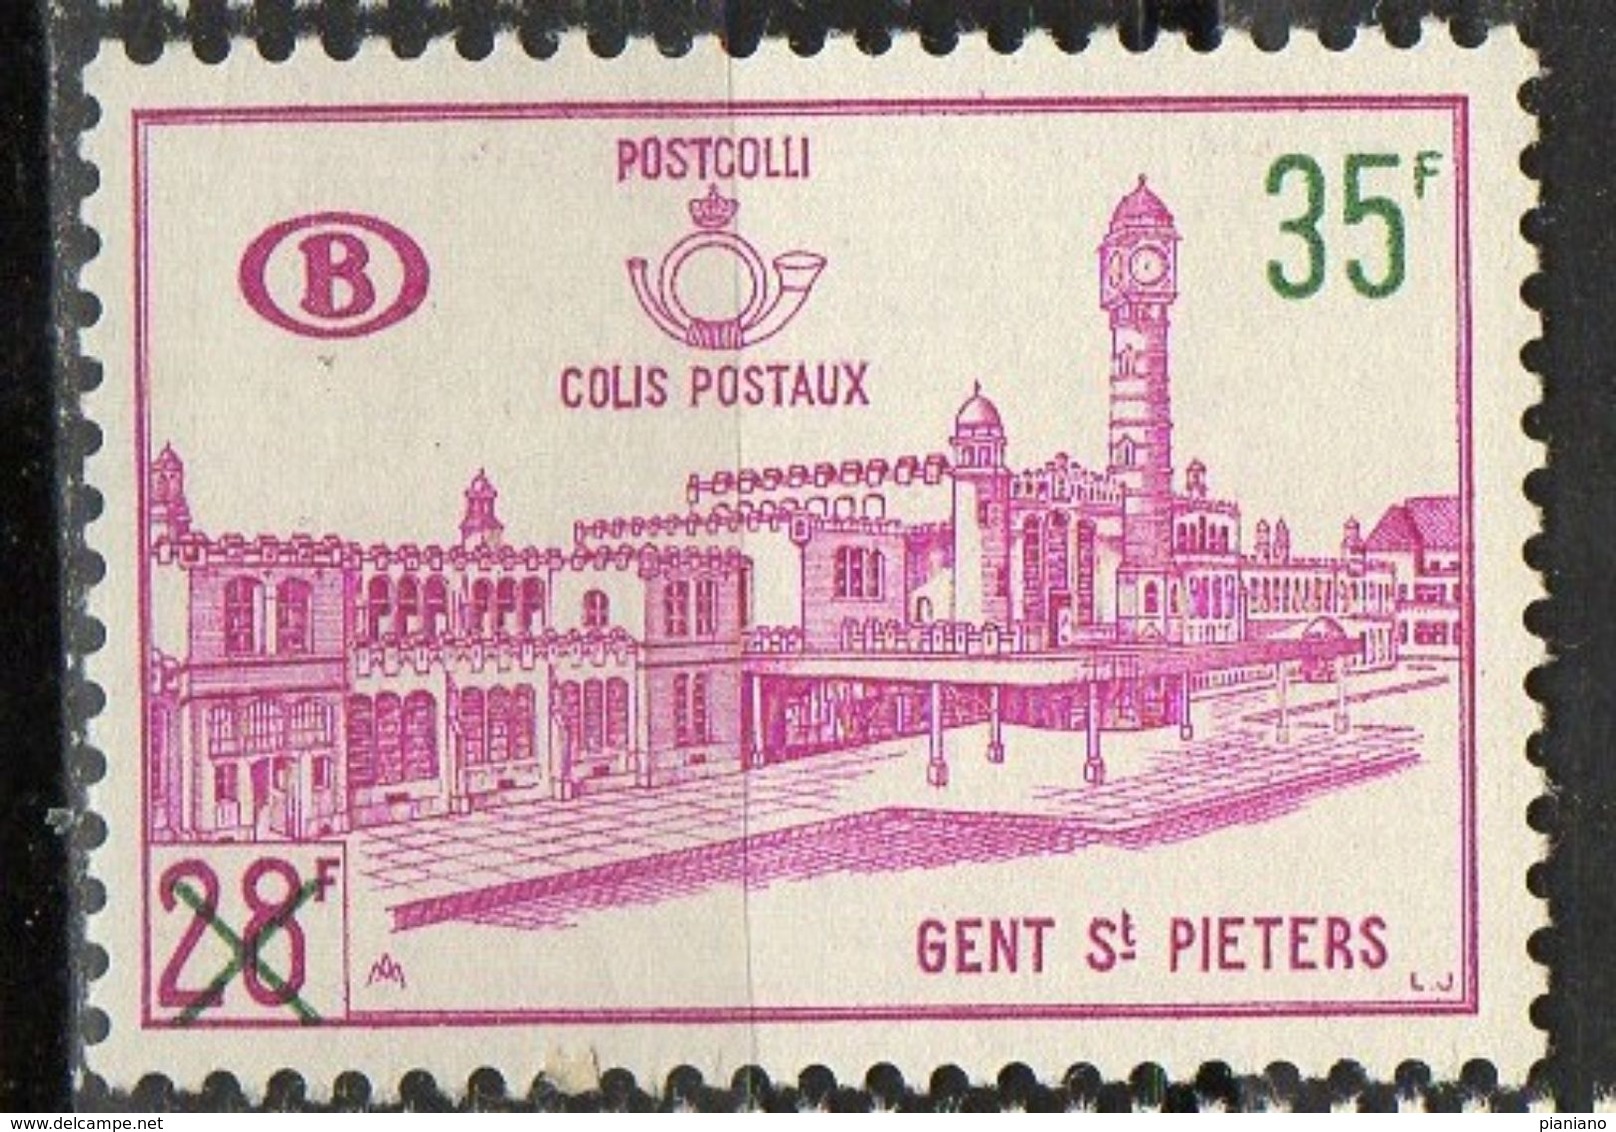 PIA - BEL -  1964 - Stazione Centrale Di Anversa - Francobollo Precedente Sovrastampato-  (Yv PACCHI 377) - Gepäck [BA]